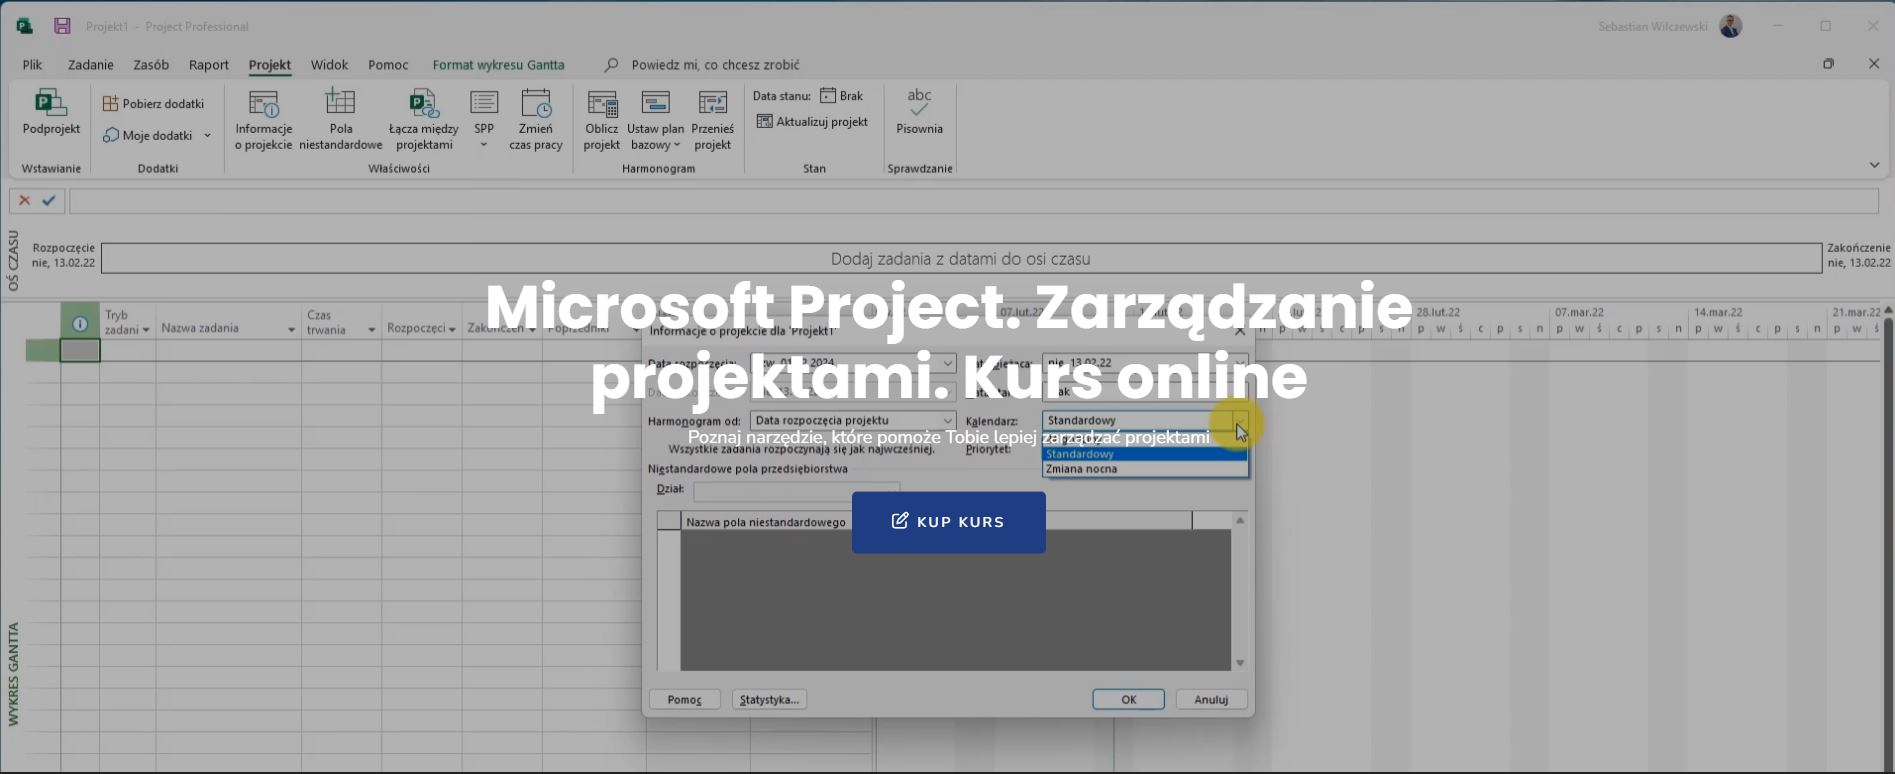 Kurs online. Microsoft Project. Zarządzanie projektami. 